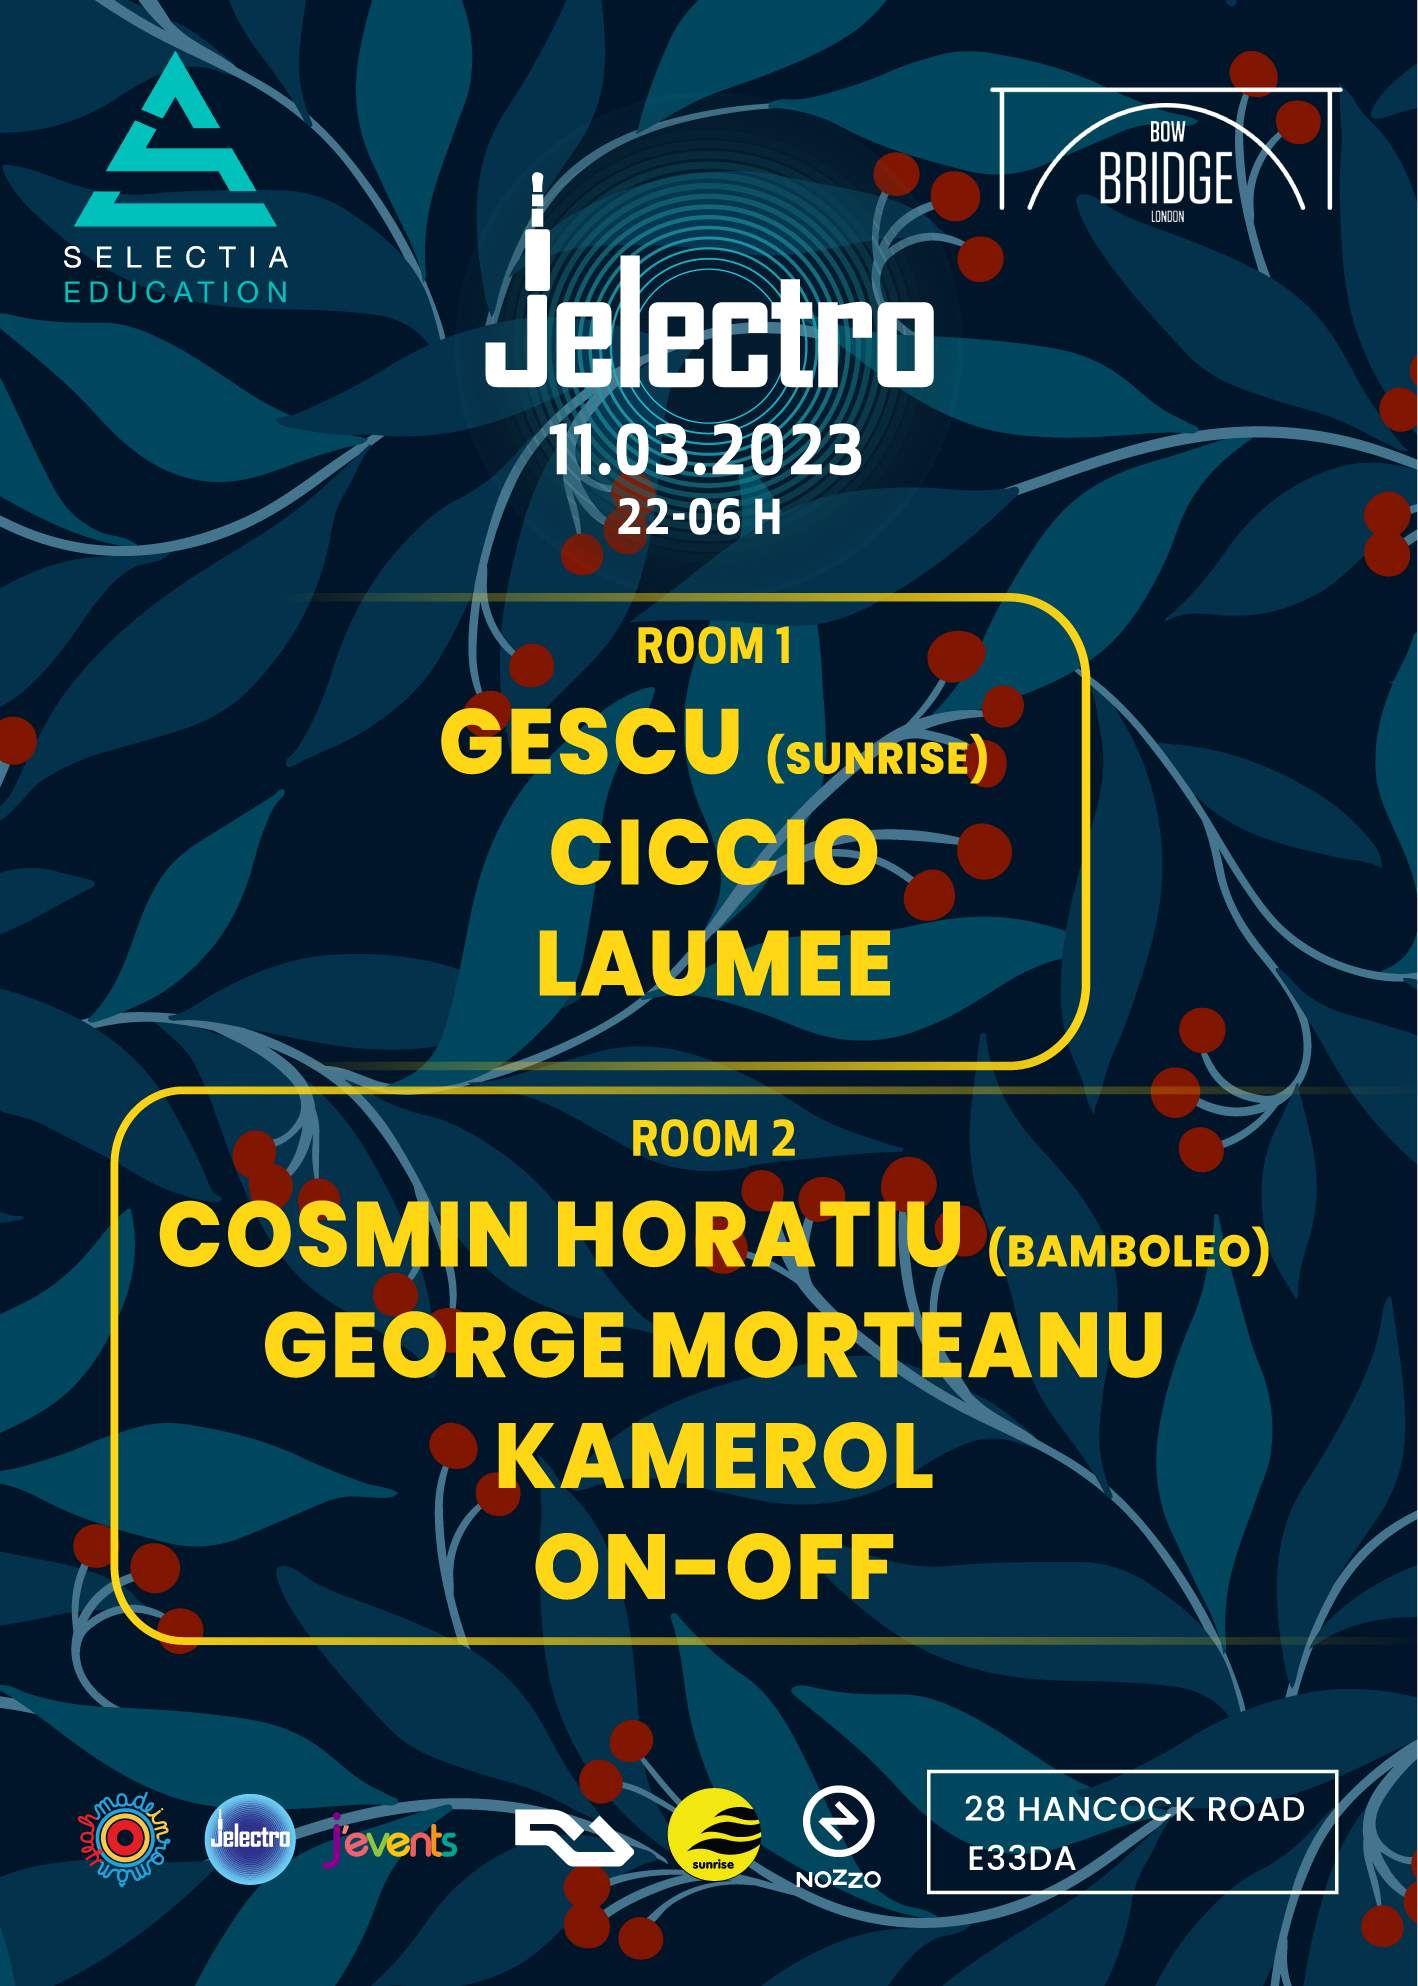 Gescu (Sunrise), Ciccio & Laumee, Cosmin Horatiu (Bamboleo), George Morteanu, KAMEROL, On-OFF - フライヤー裏